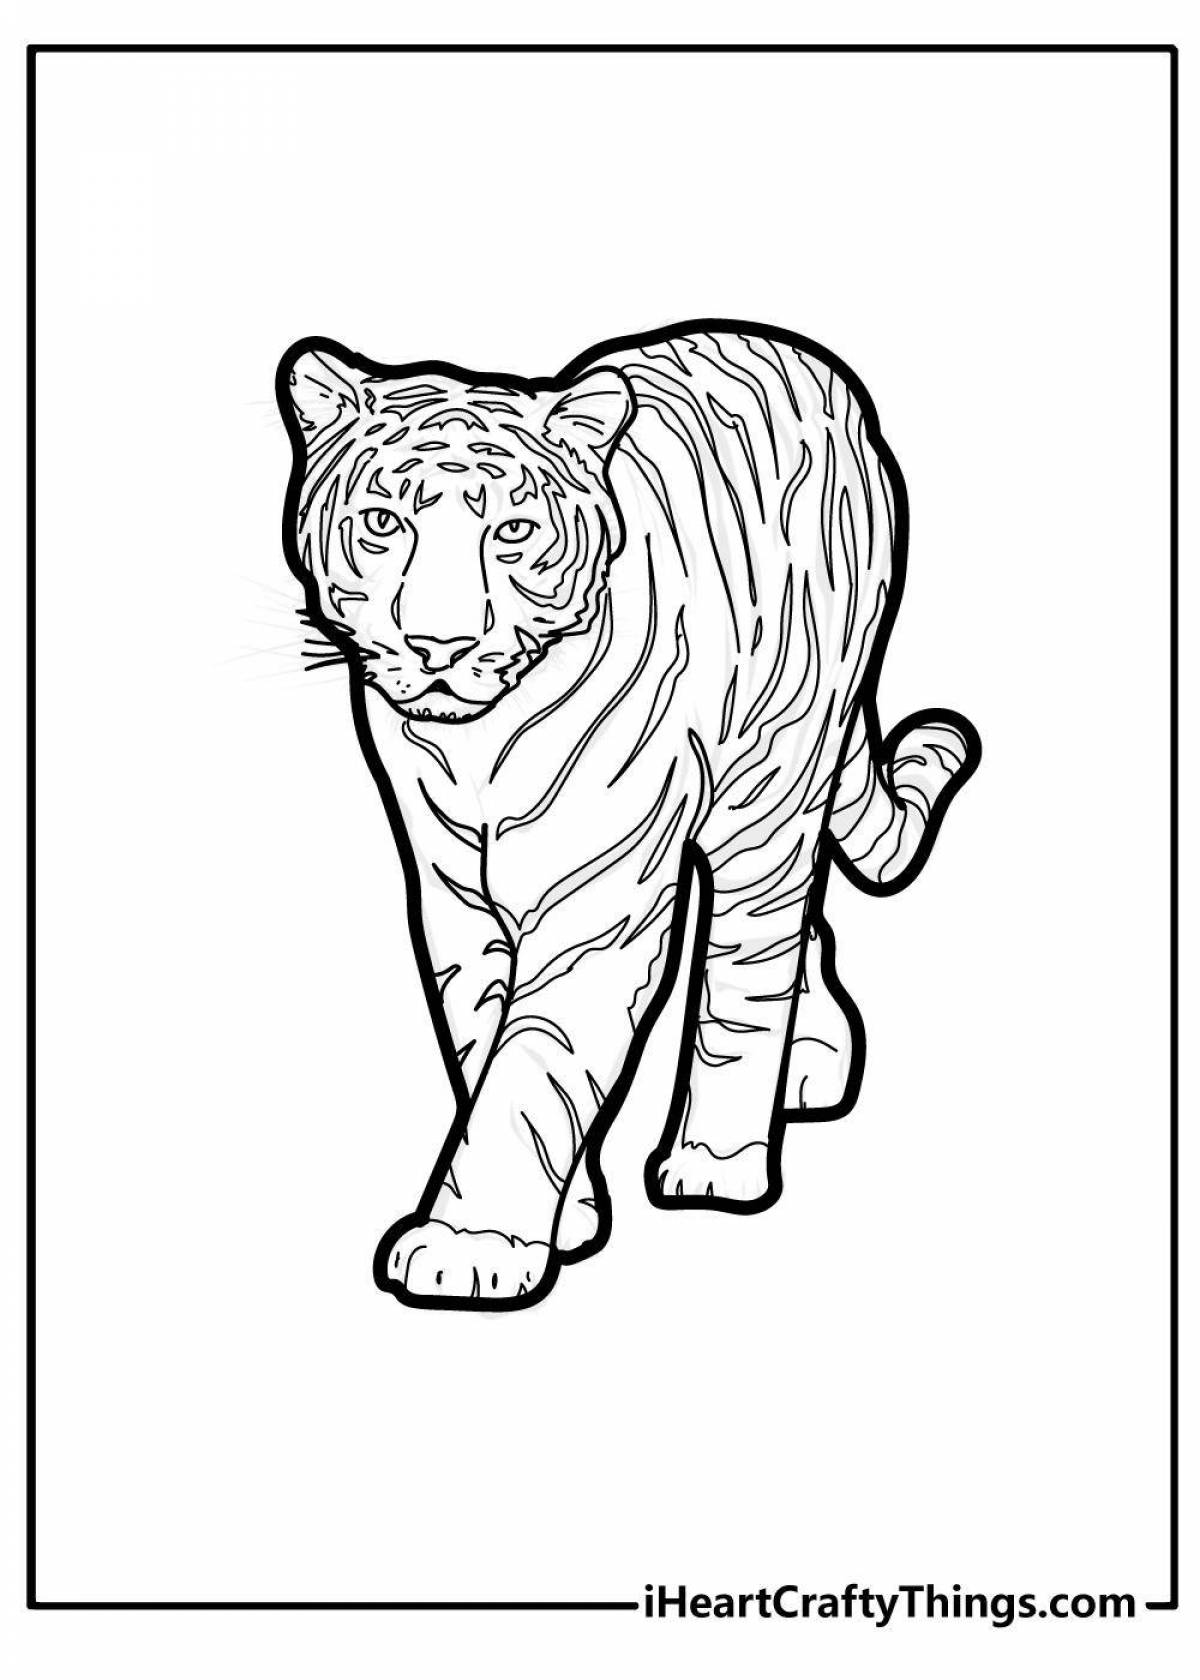 Веселая раскраска тигр для детей 6-7 лет